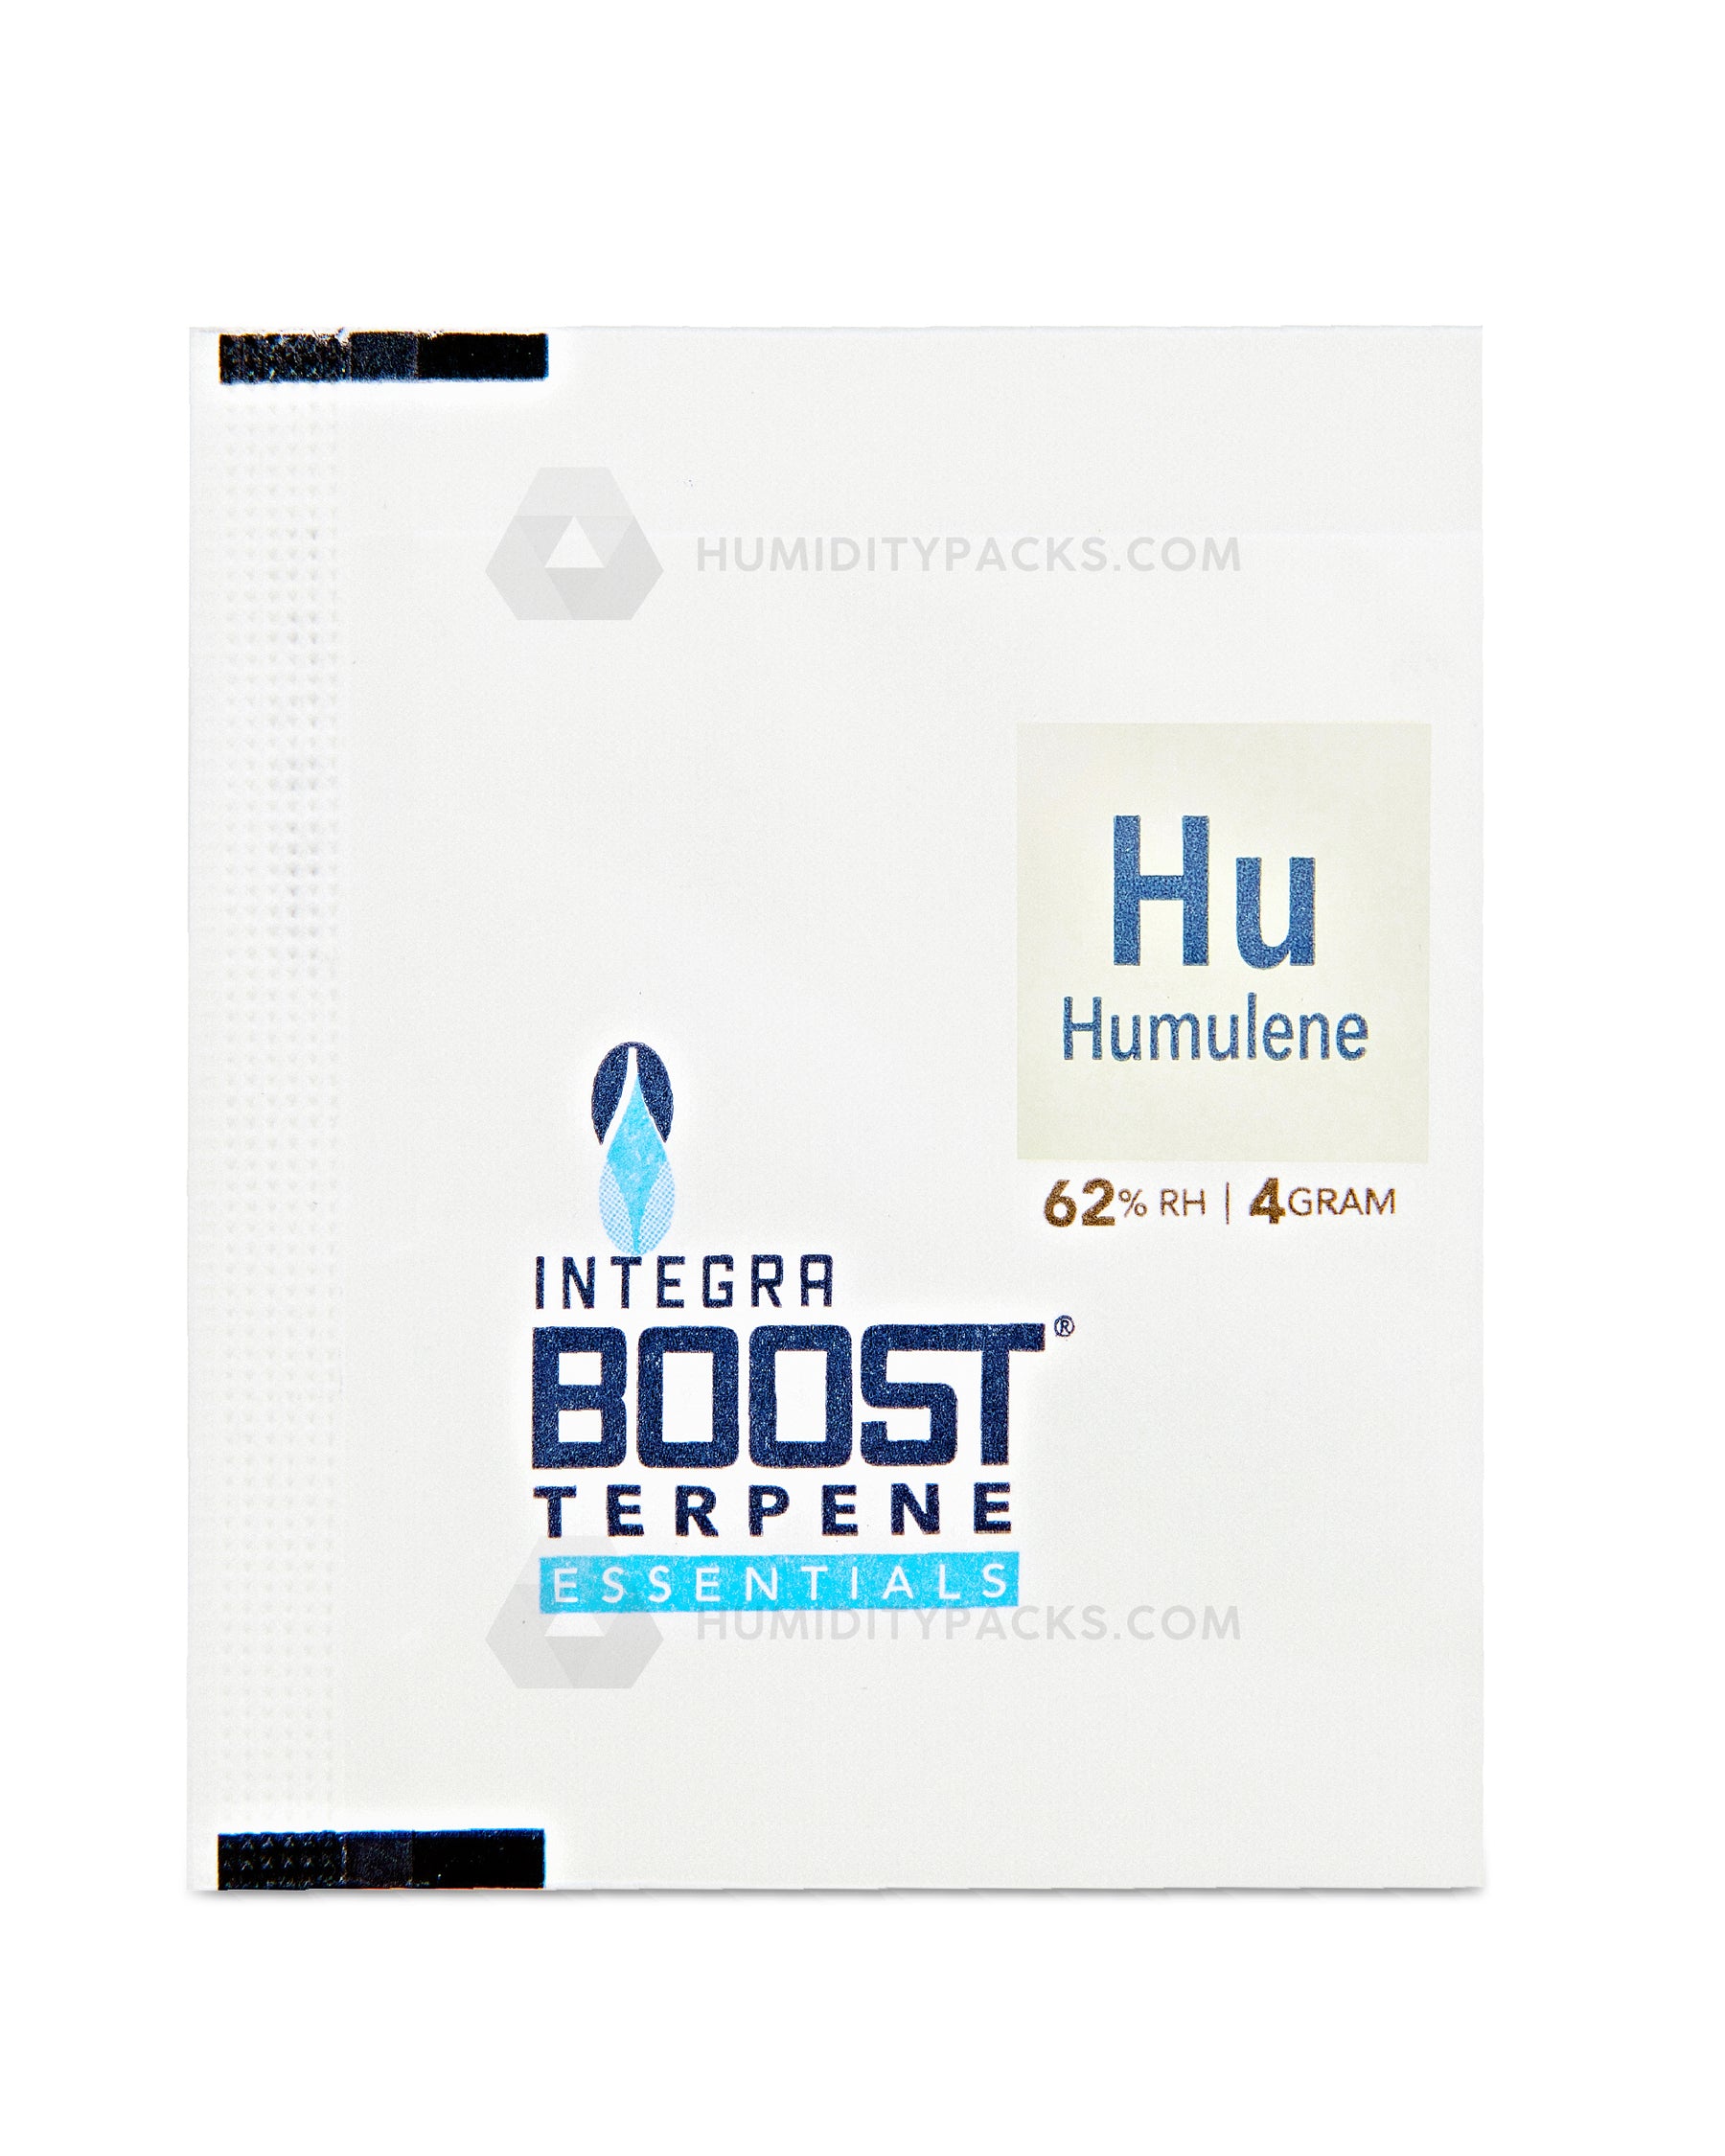 Integra Boost 4 Gram 2-Way Terpene Essentials Humulene Humidity Packs (62%) 48-Box Humidity Packs - 4